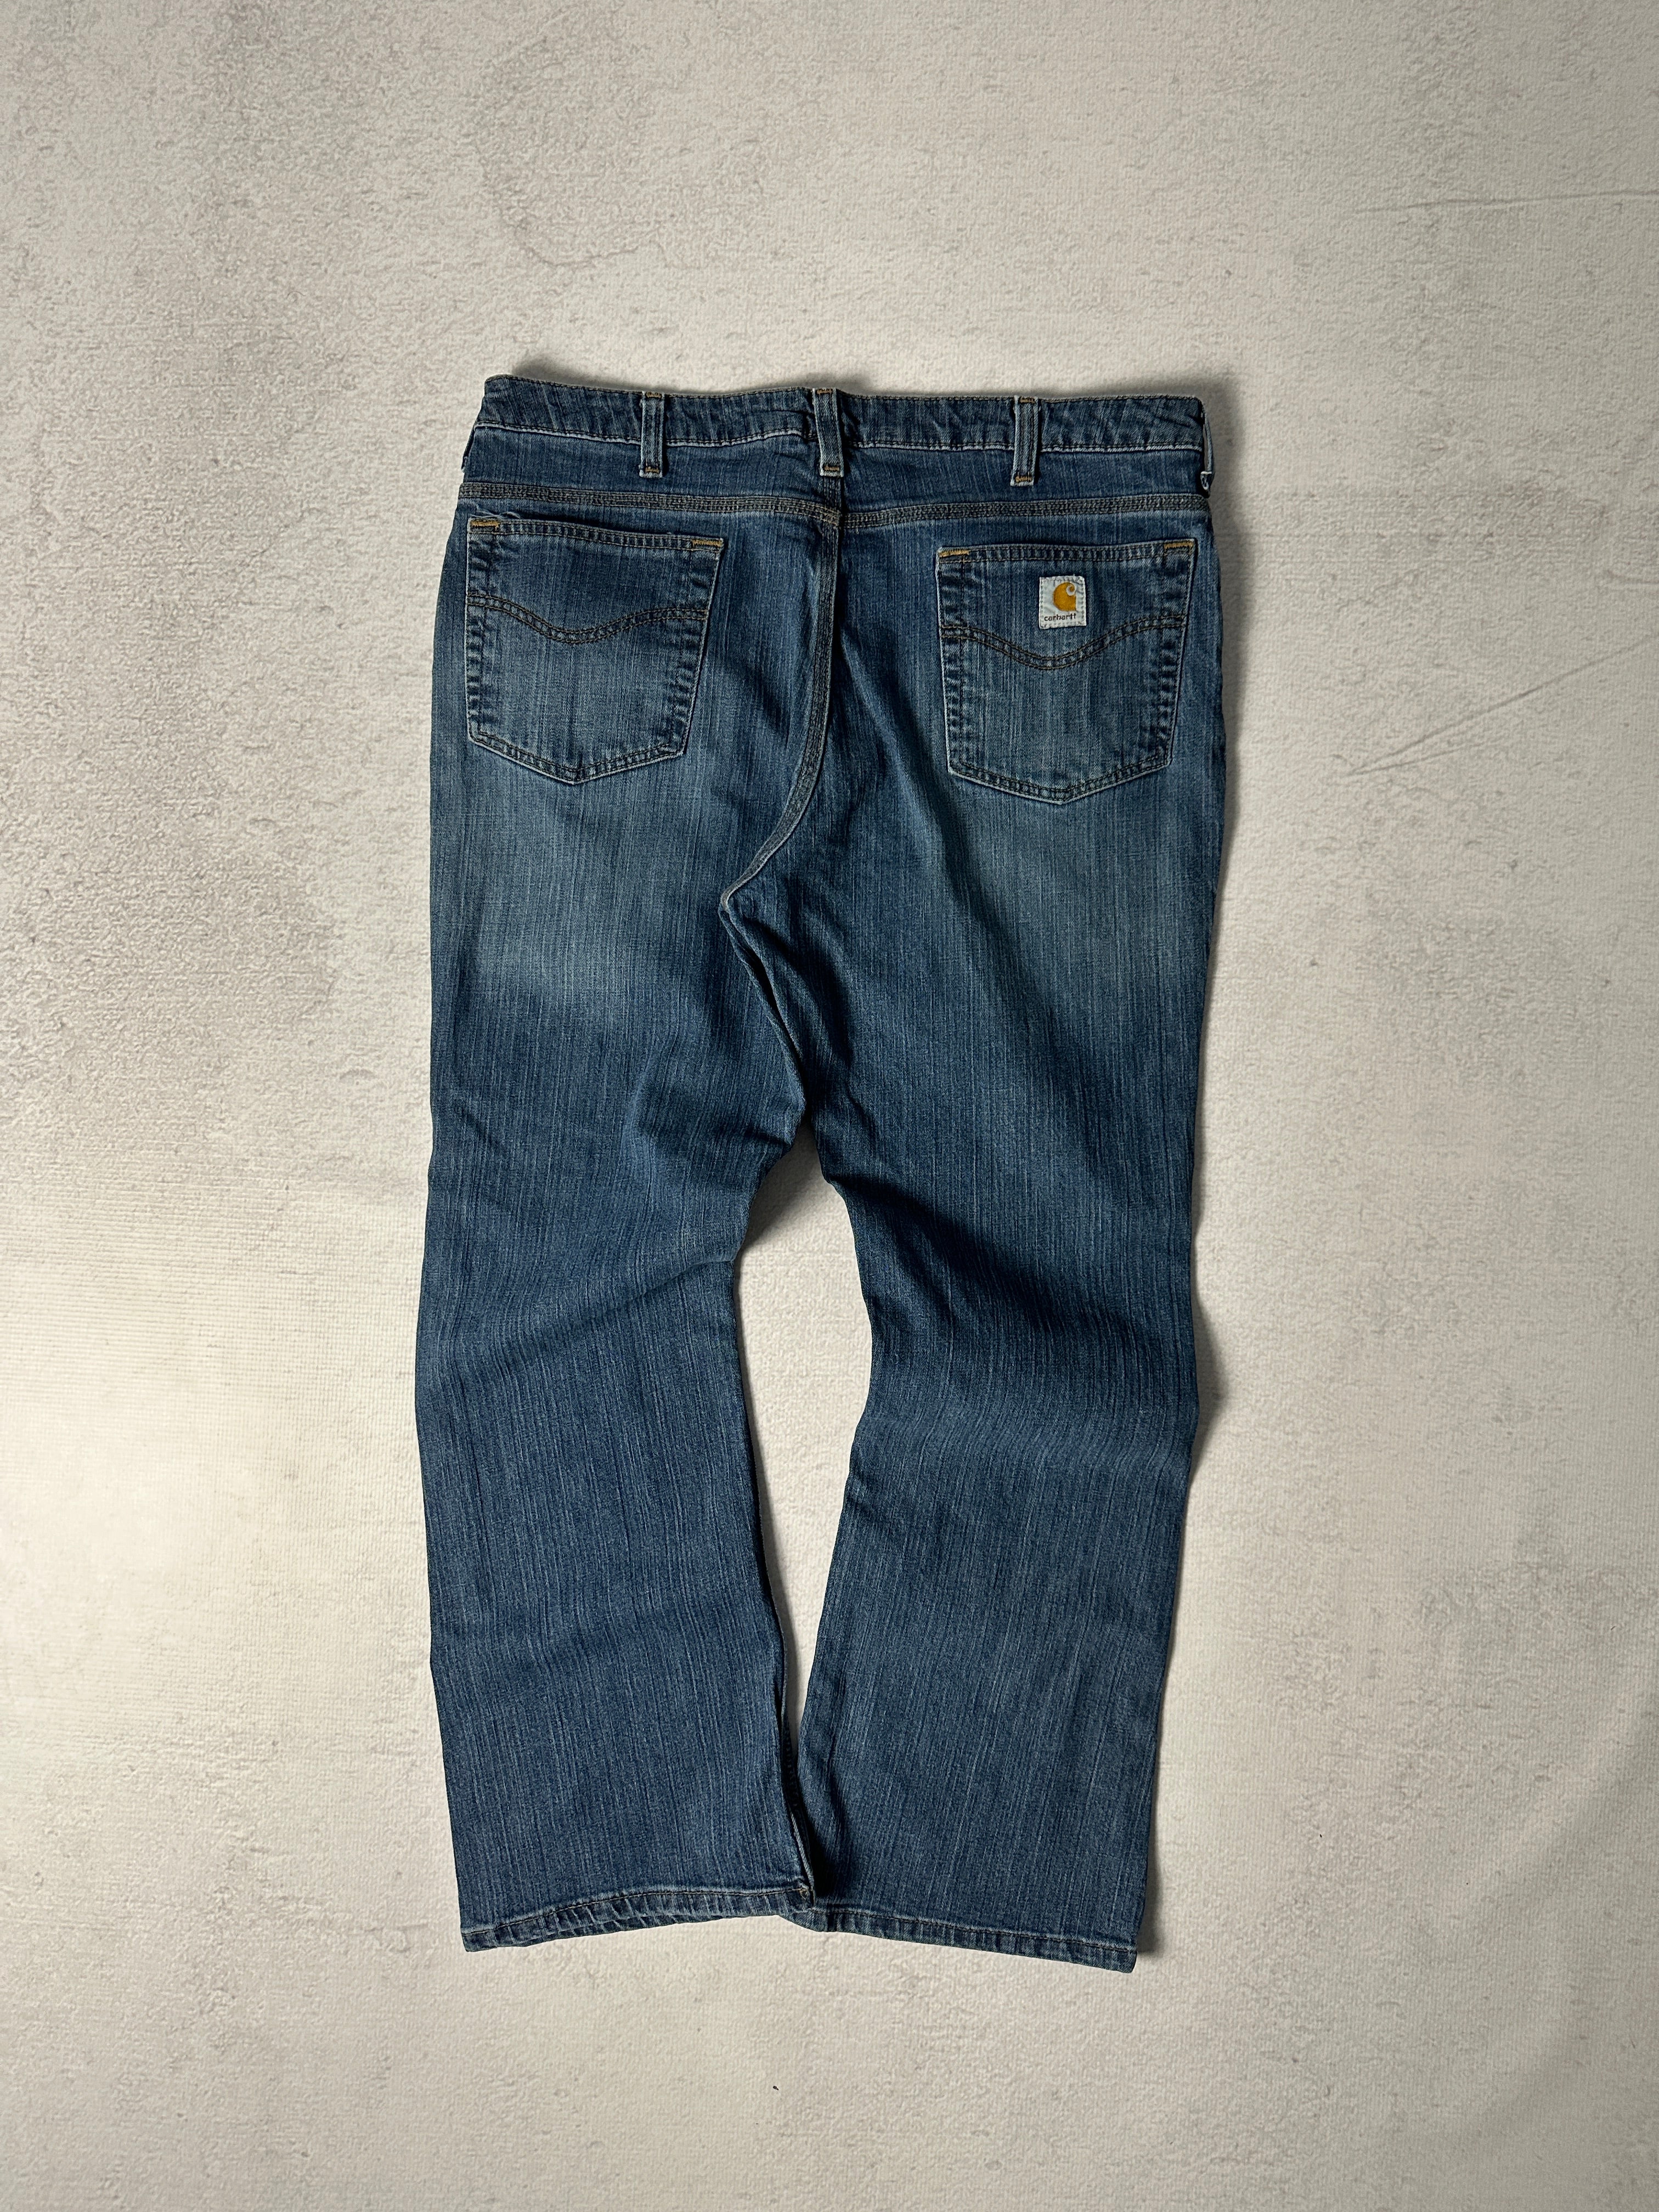 Vintage Carhartt Jeans - Women's 36 x 30